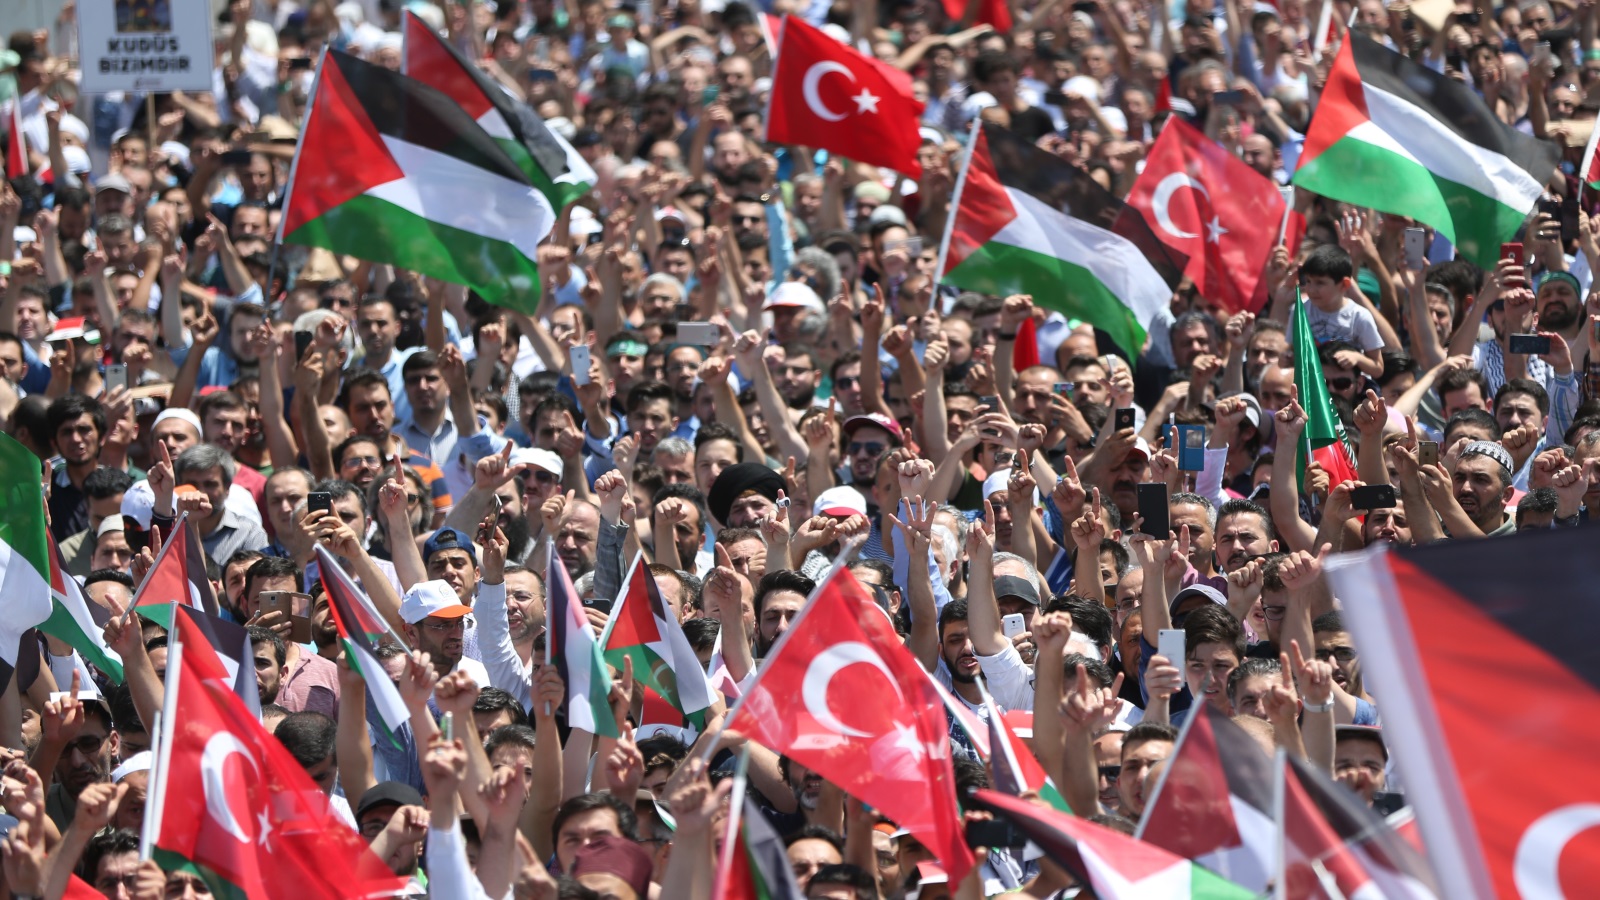 يبدو المجتمع الفلسطيني الأكثر تجذرًا وتاريخًا في تركيا؛ إذ استطاع بسبب ارتباطه بالقضية الفلسطينية أن ينظم نفسه بشكل أكبر، وأن يتواصل مع المجتمع والدولة التركيتين